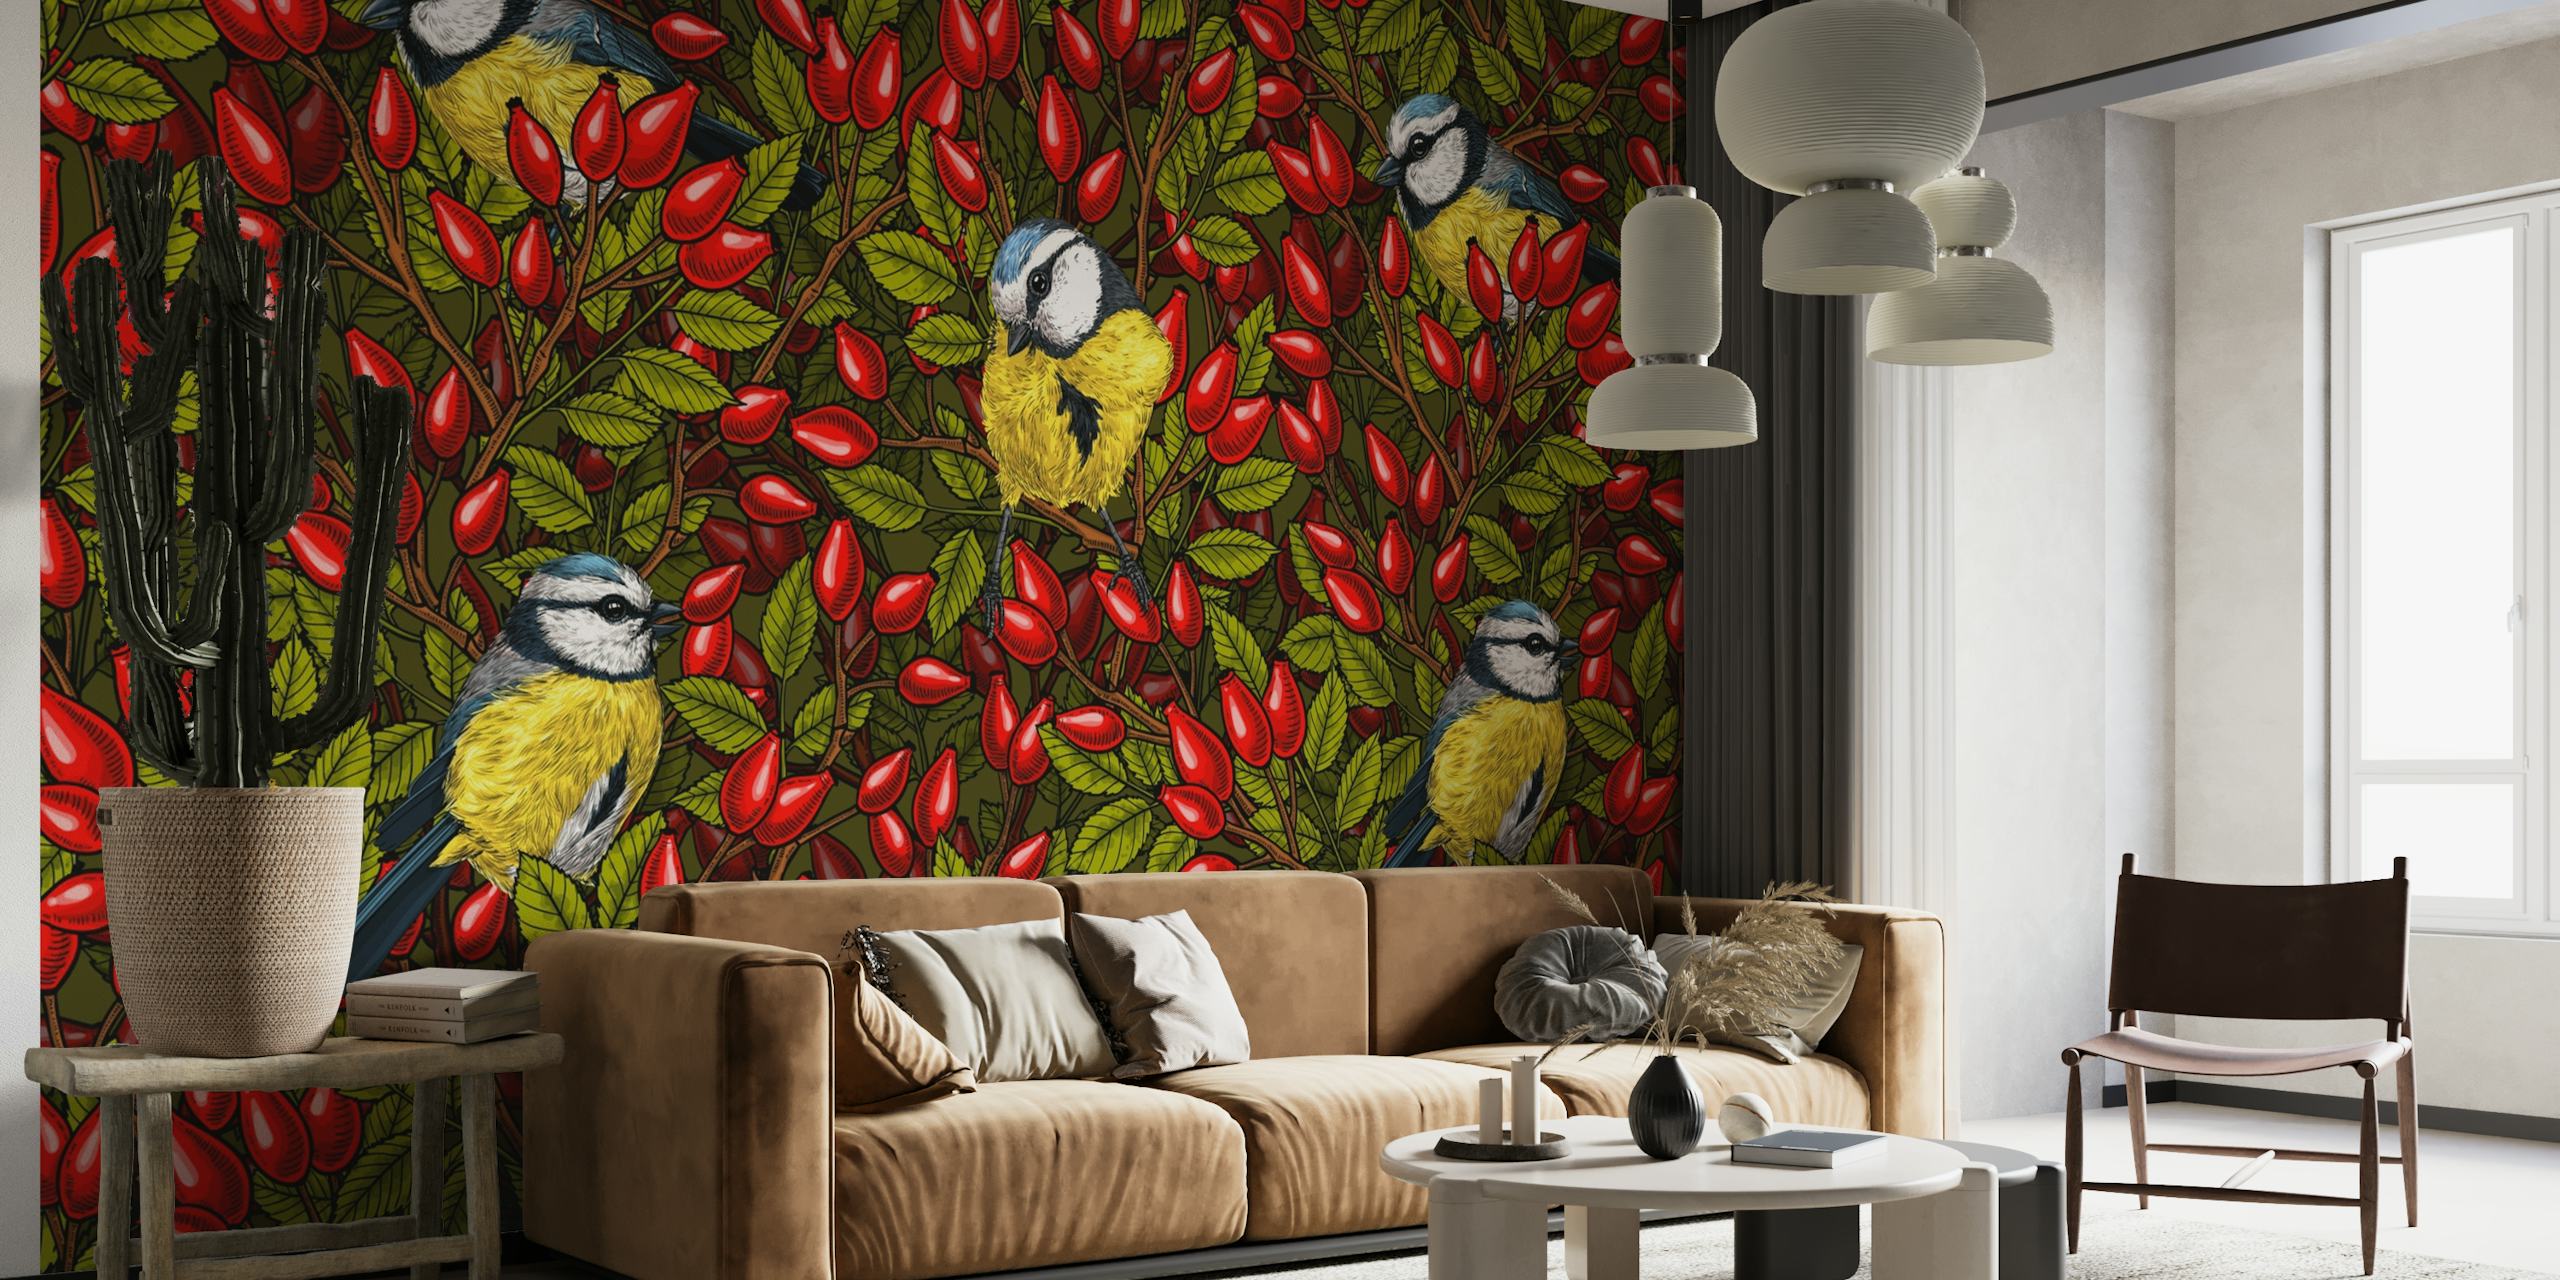 Dizajn zidnih slika šarenih ptica i crvenog šipurka